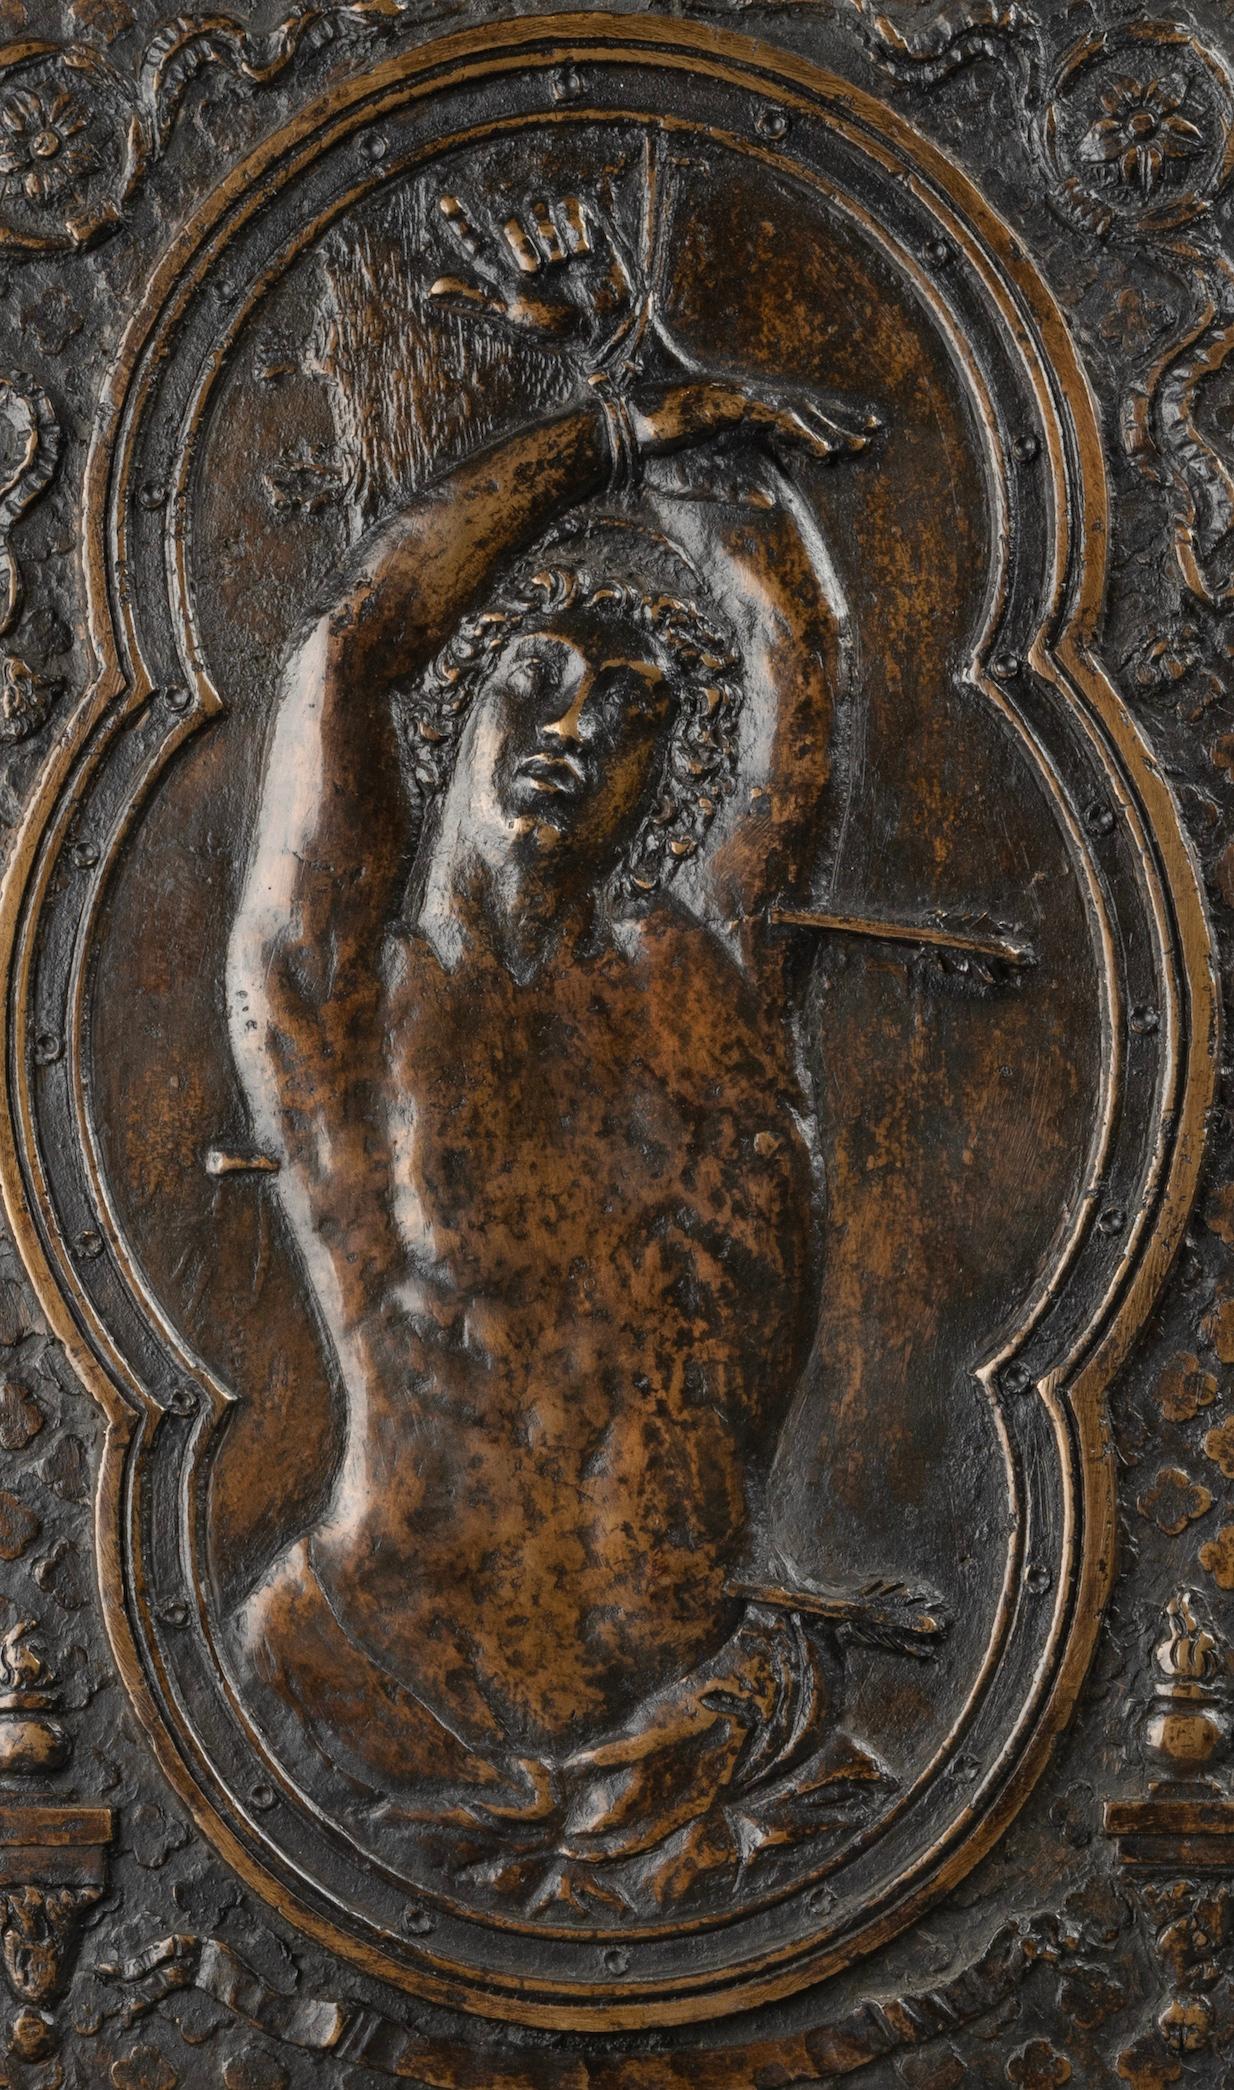 Große gegossene und gemeißelte Bronzeplakette
Der Heilige Sebastian nach dem Modell von Guido Reni (Kapitolinisches Museum)
Rom, 17. Jahrhundert

Große rechteckige Bronzetafel mit der Darstellung des Martyriums des Heiligen Sebastian in einem